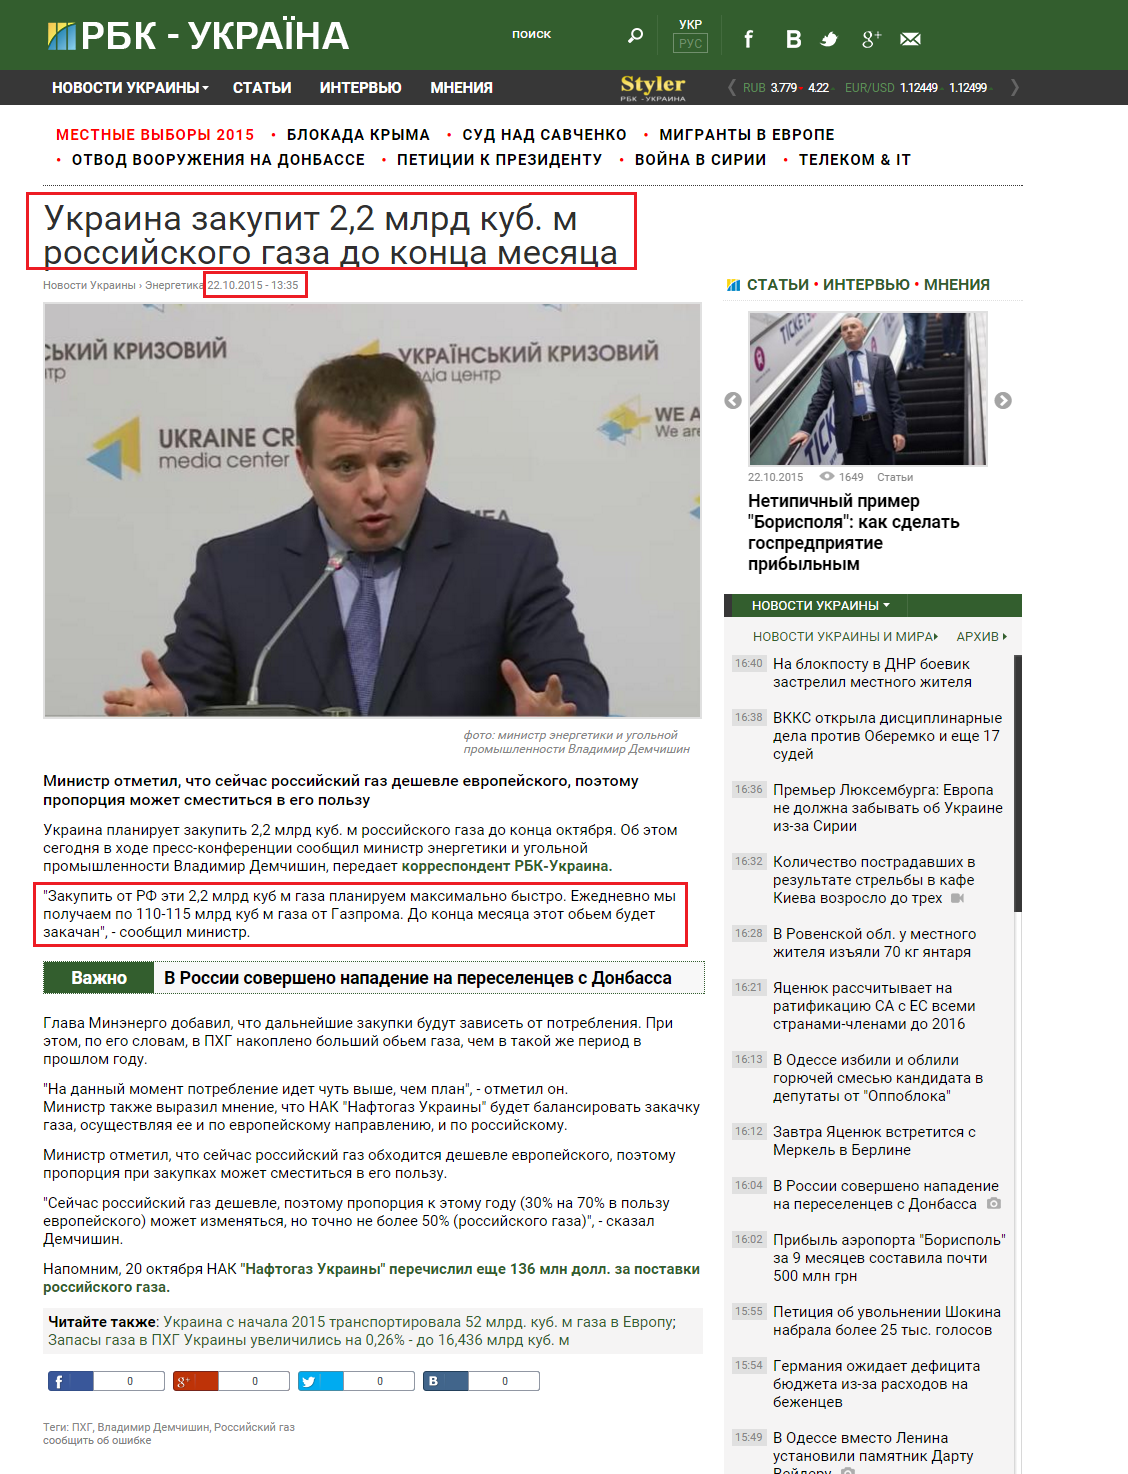 http://www.rbc.ua/rus/news/ukraina-zakupit-mlrd-kub-rossiyskogo-gaza-1445510020.html